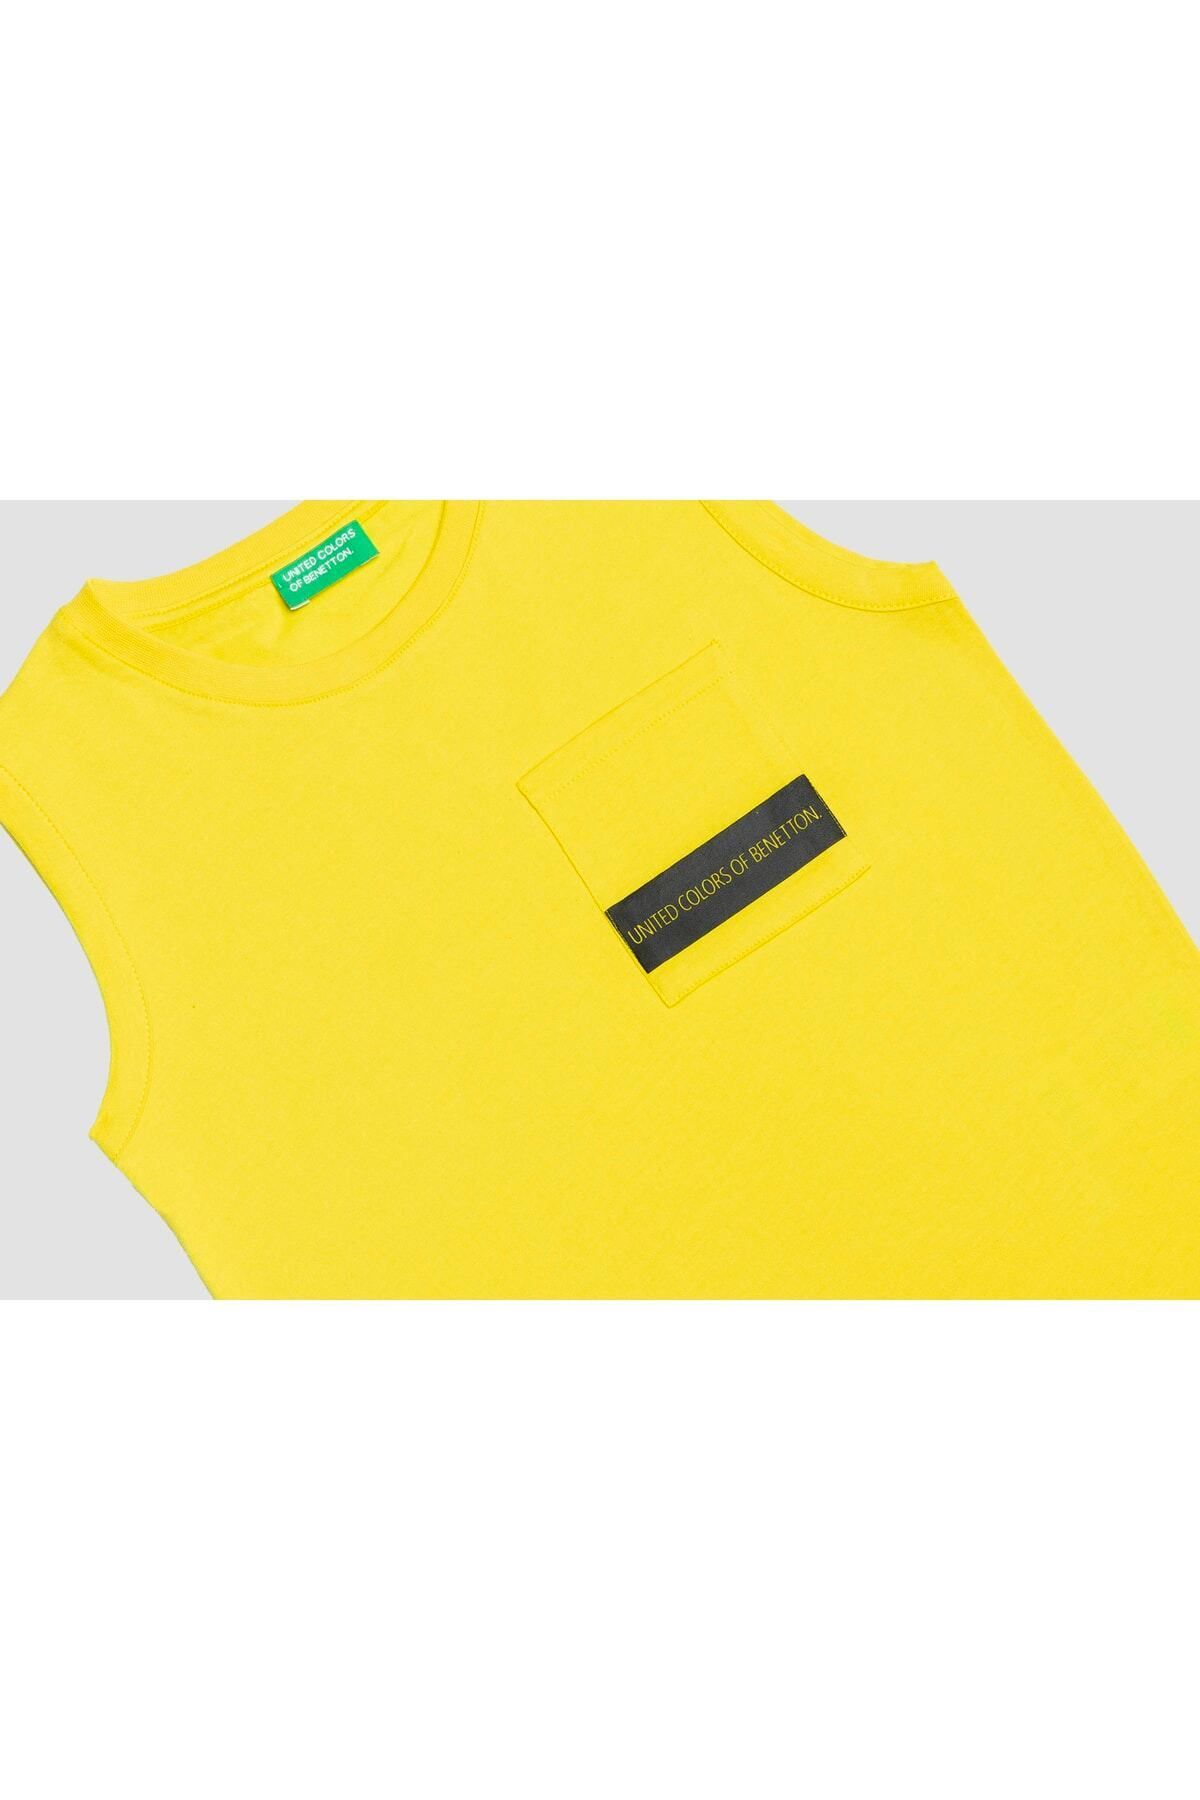 Benetton Erkek Çocuk Tshirt Bnt-b20526 Sarı